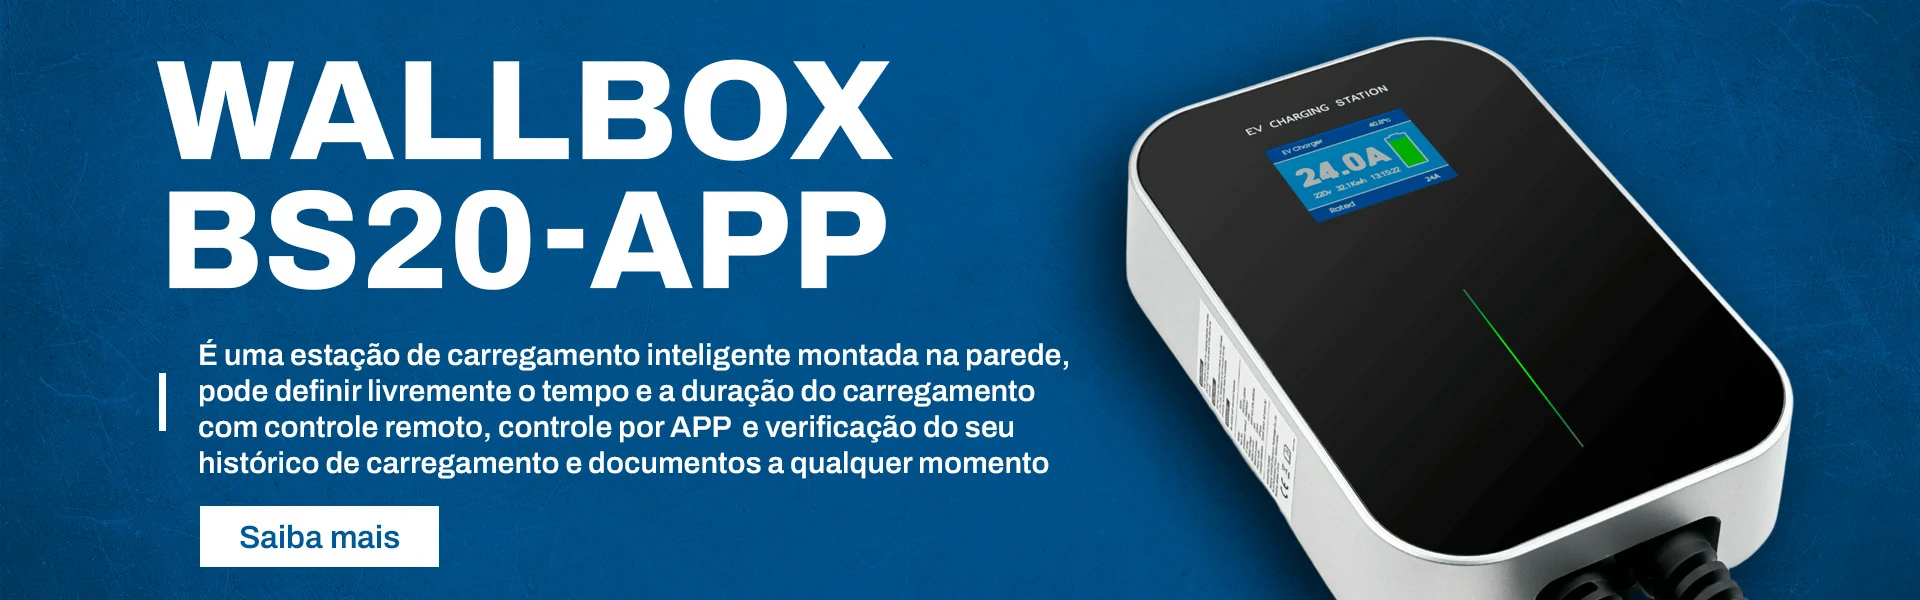 wallbox-bs20-app